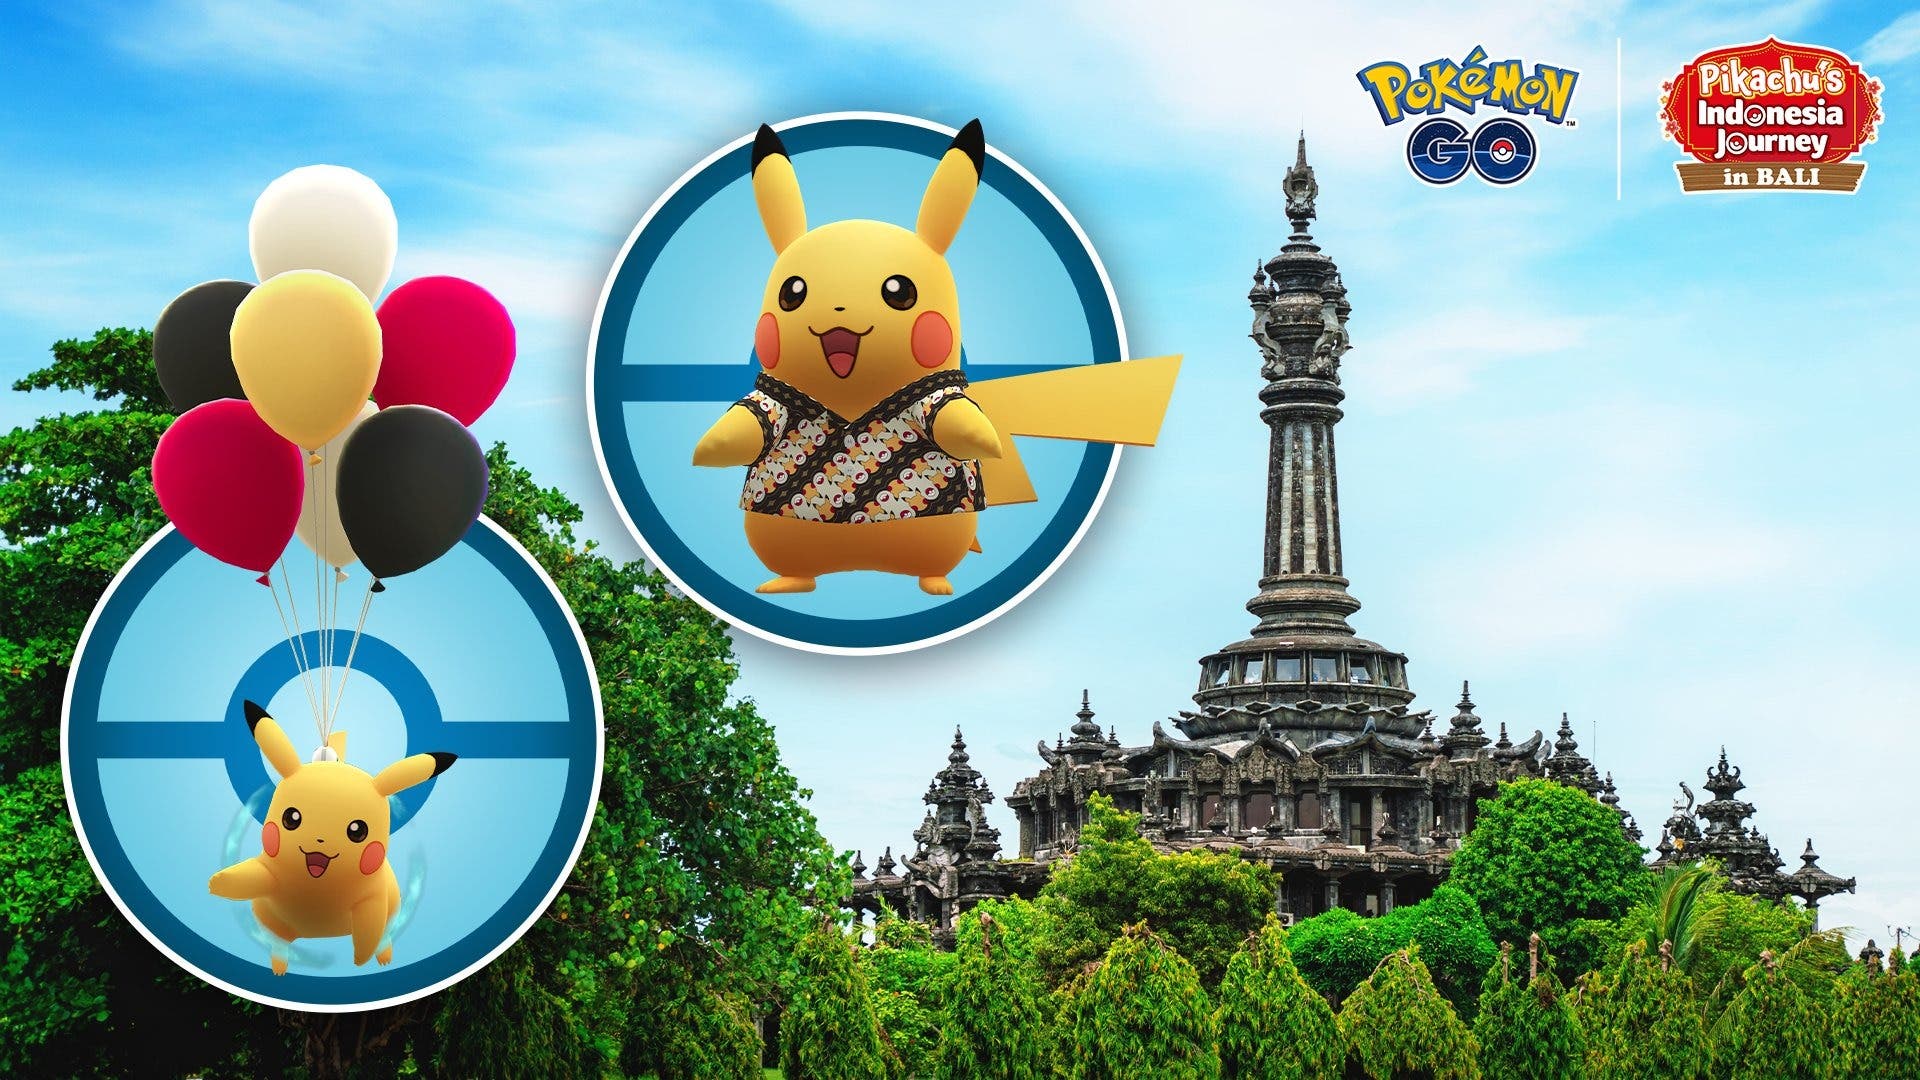 Pokémon GO detalla su nuevo evento local en Indonesia